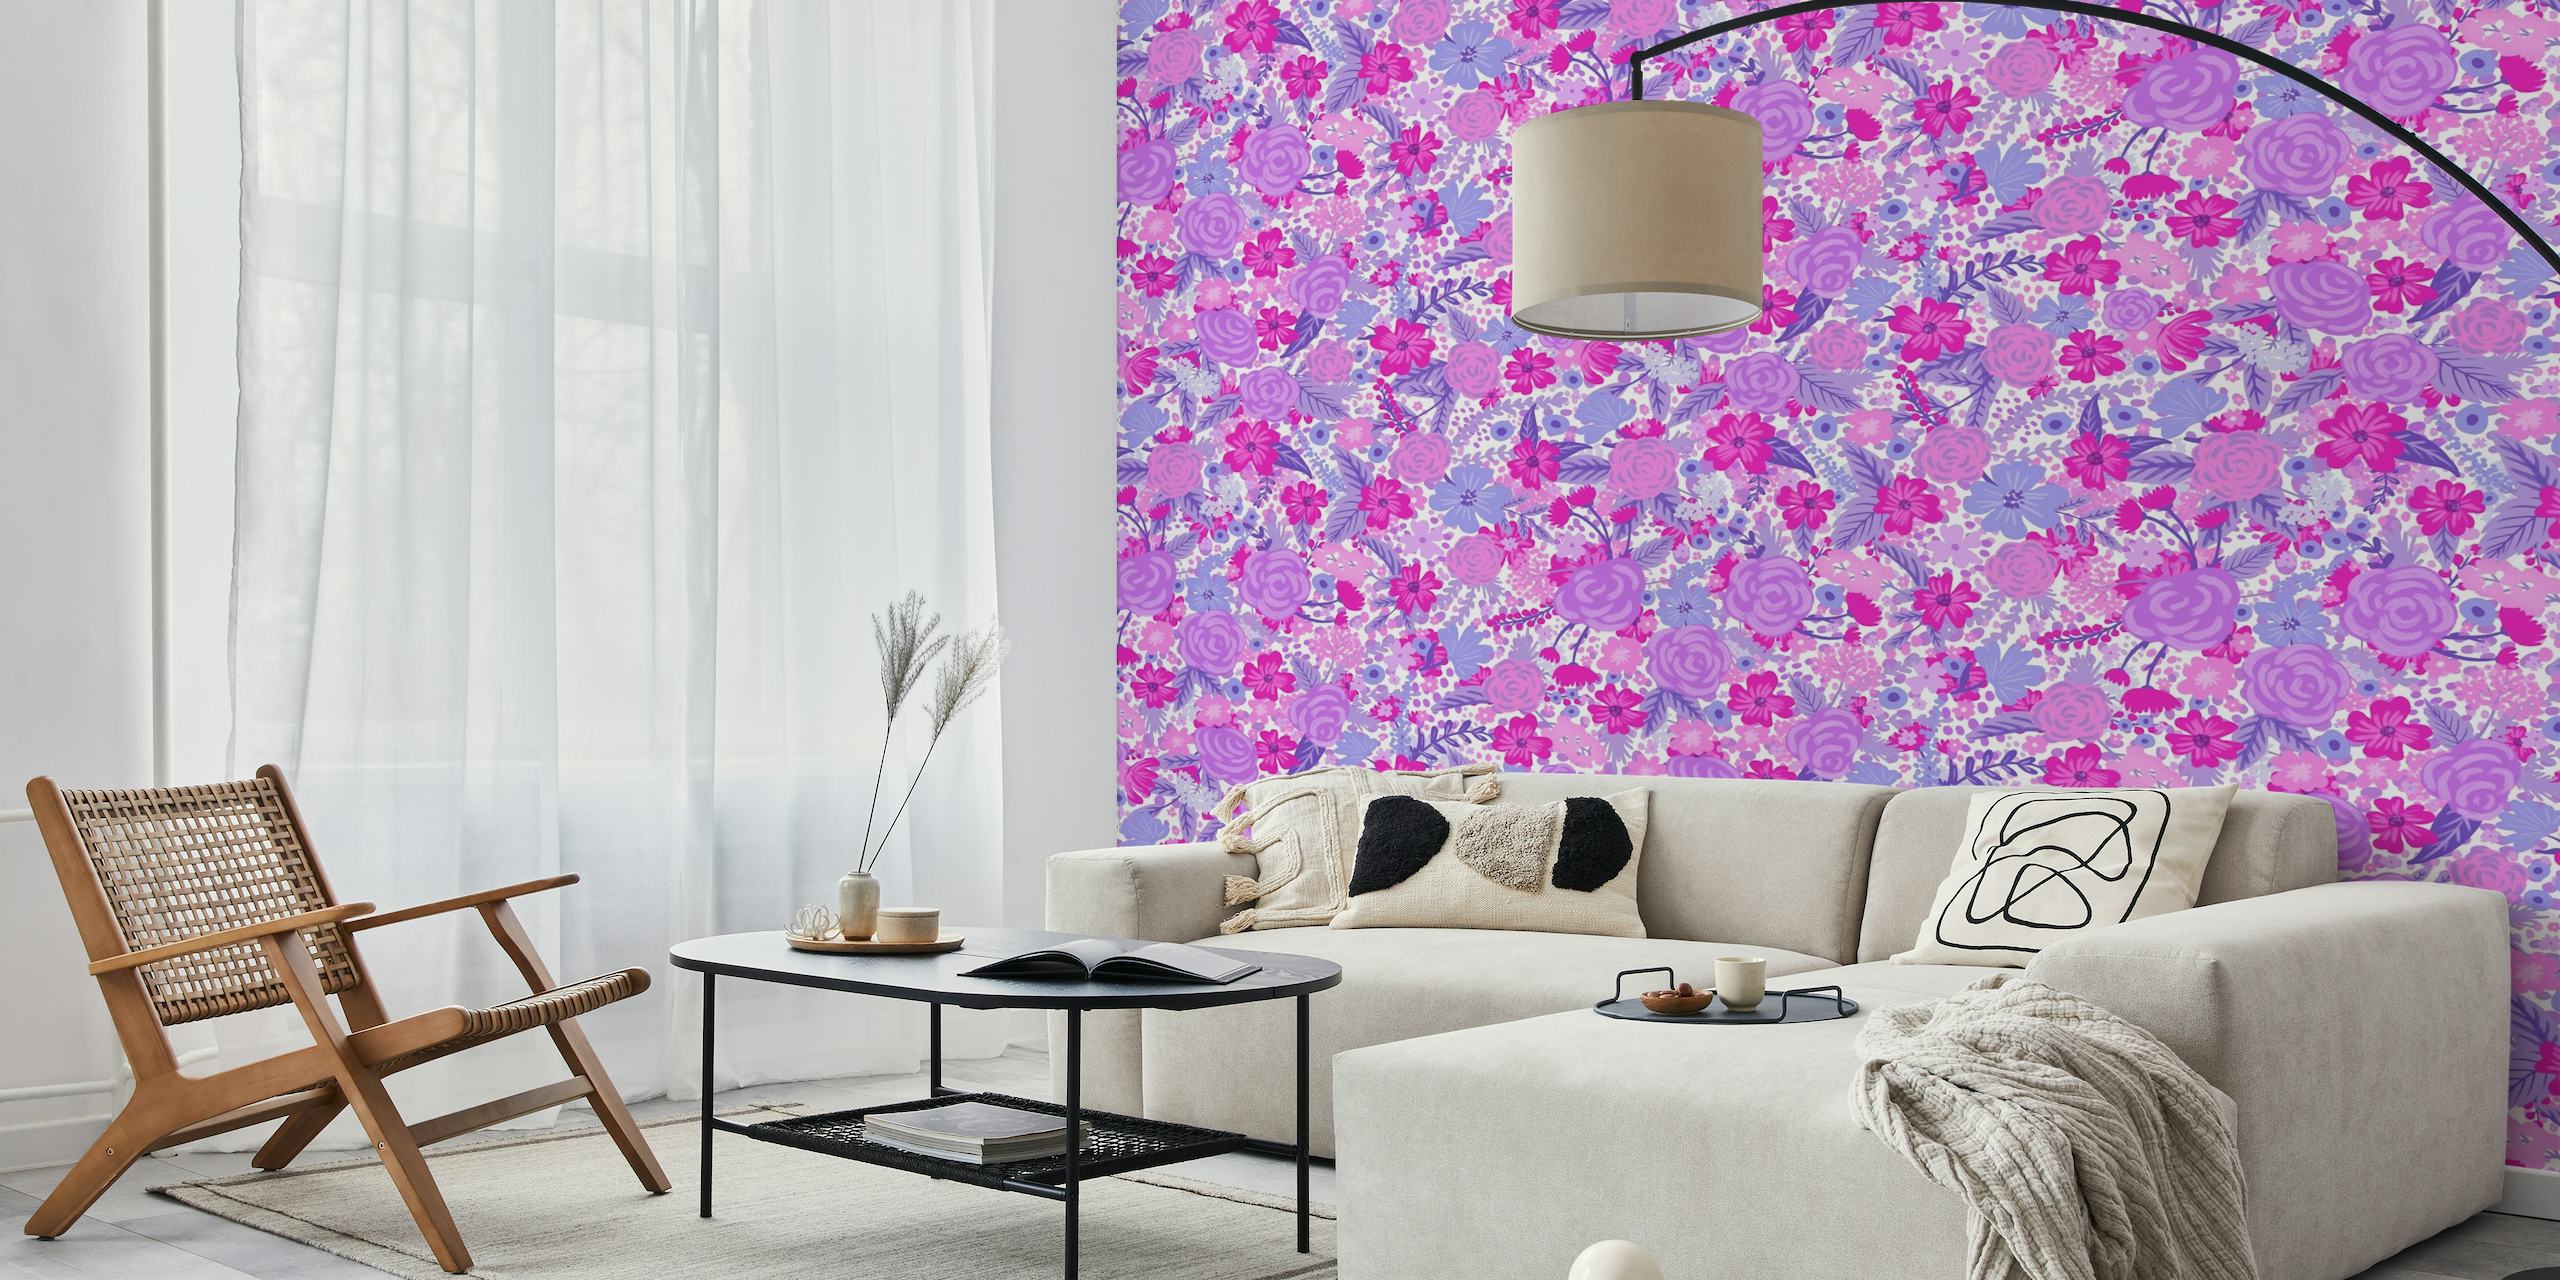 Ein lebendiges und detailreiches Wandbild „Intangible Flower Pattern 3“ mit violetten und rosa Blumenmotiven.